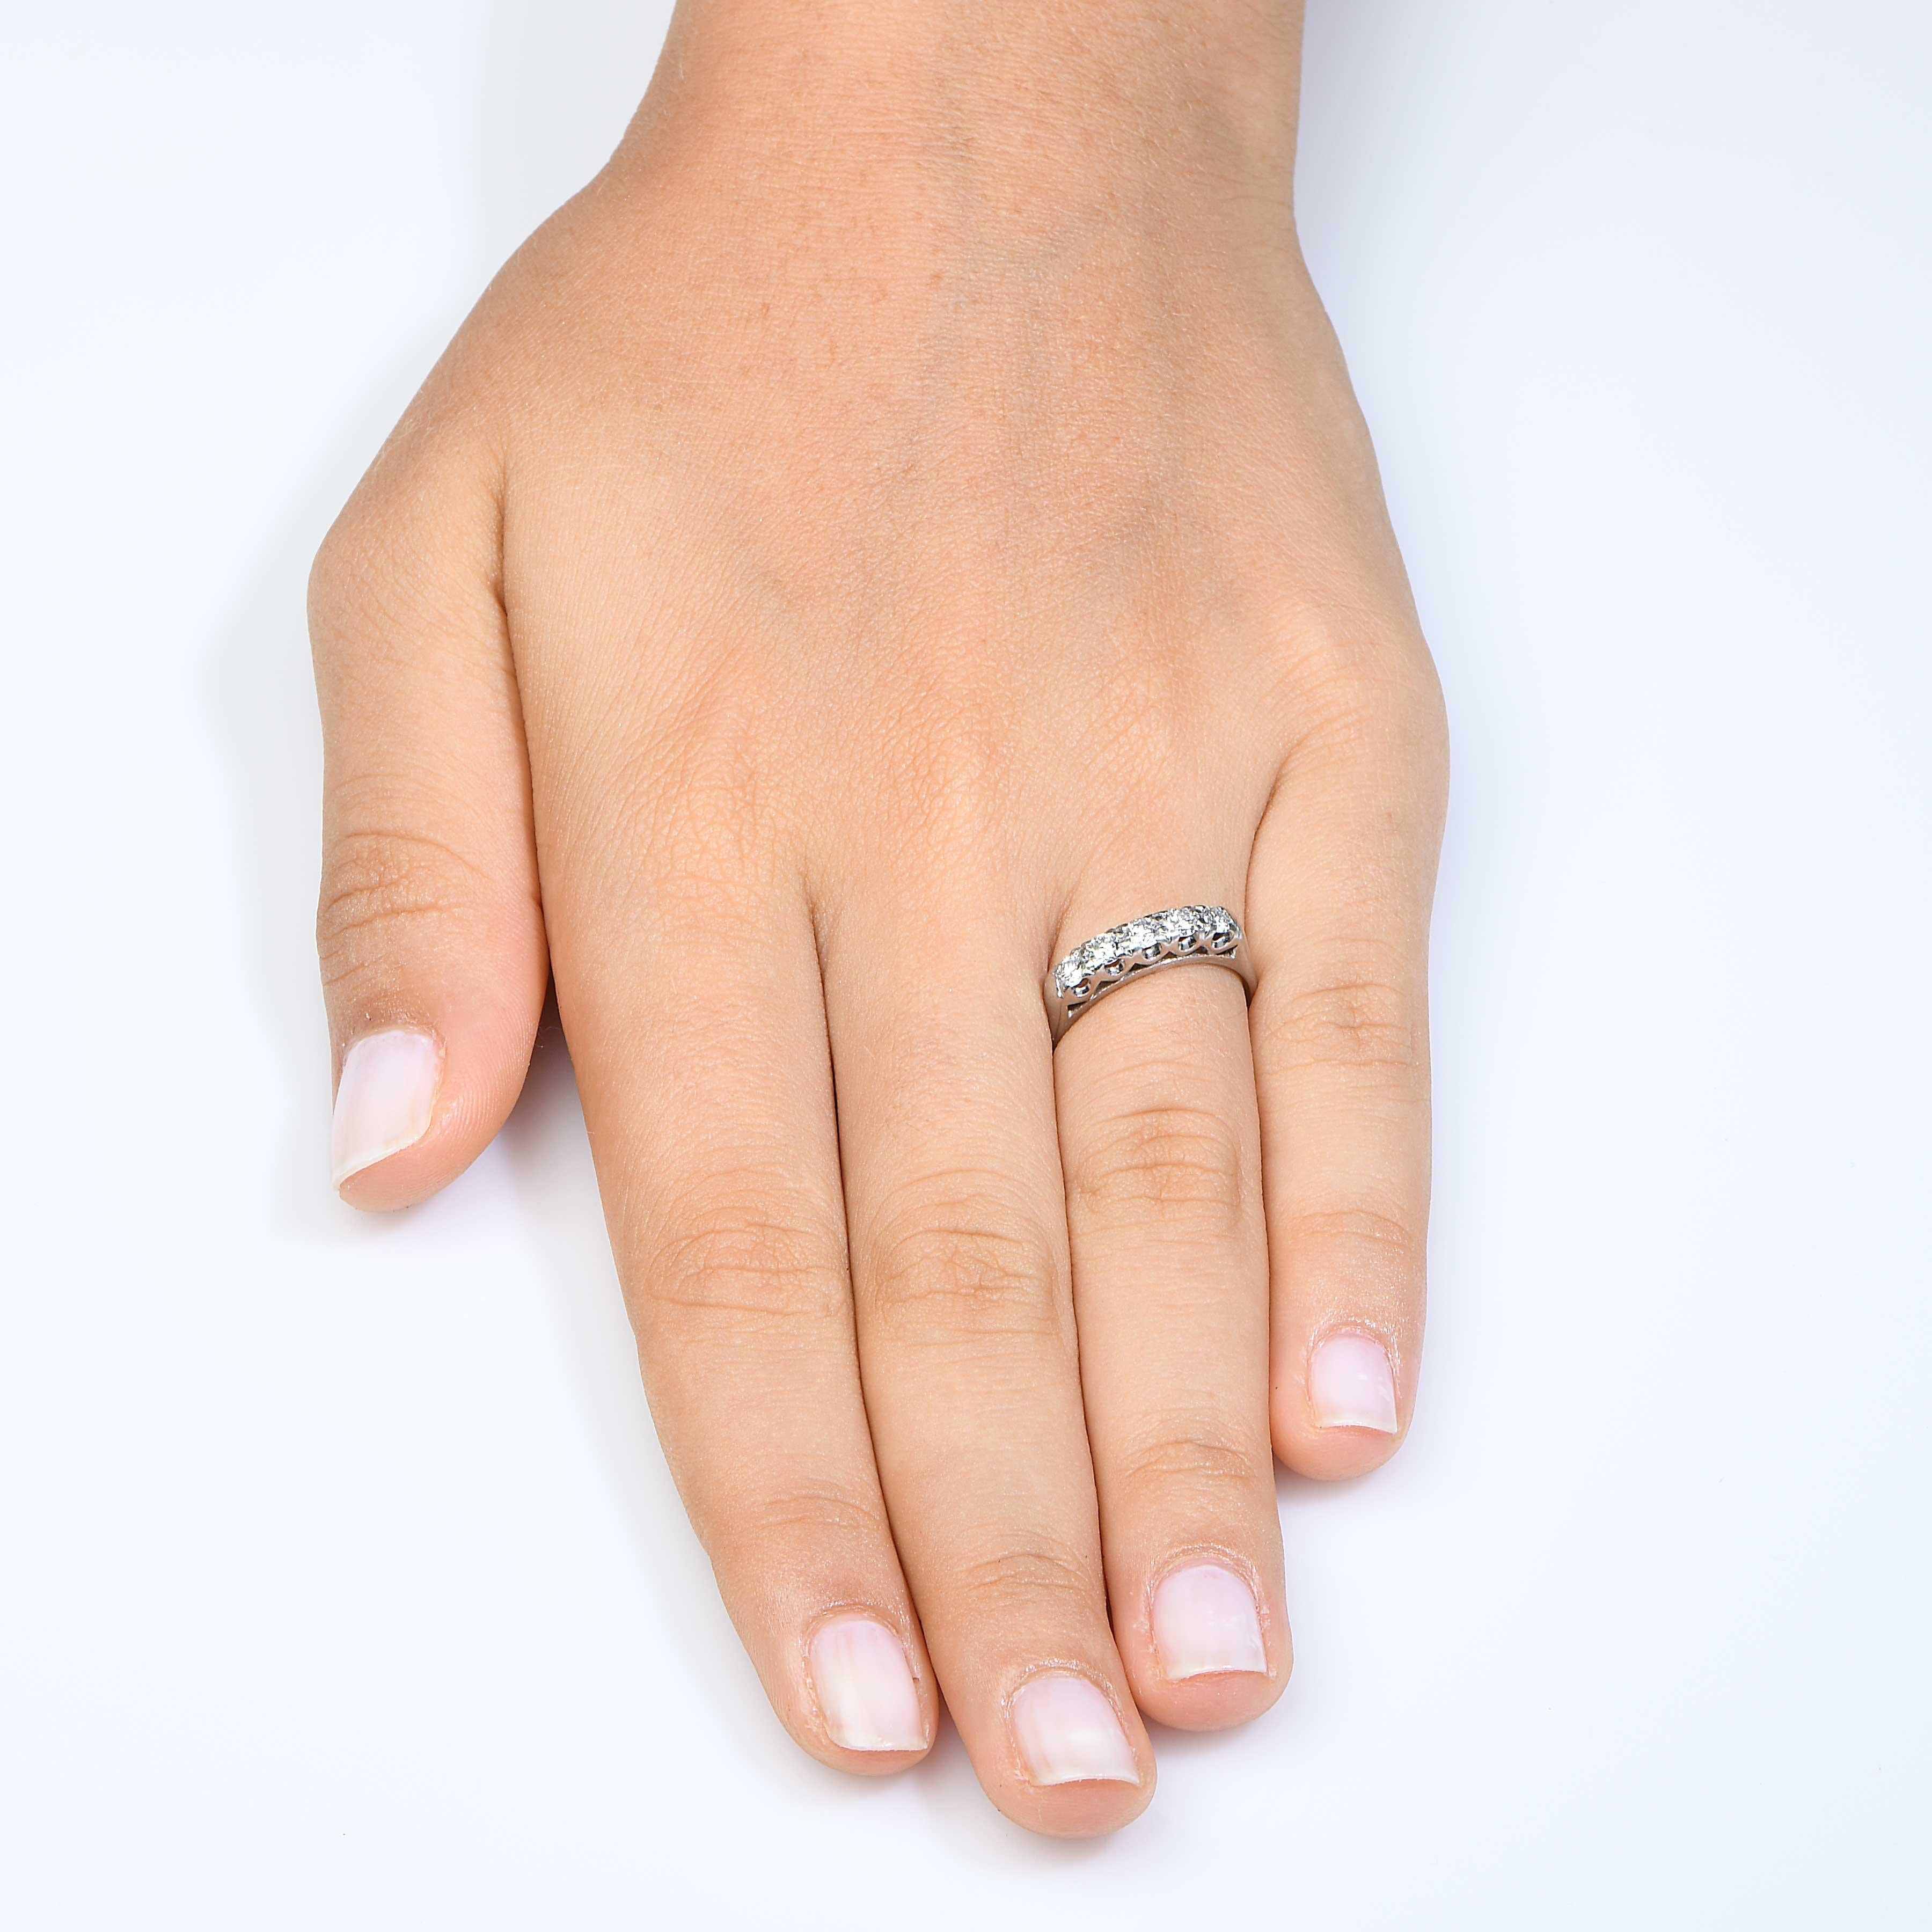 Vintage Diamond Ring verfügt über fünf runde Diamanten im Brillantschliff mit einem geschätzten Gesamtgewicht von 0,5 Karat, gefasst in Platin.
Ringgröße: 6.75
Metall Gewicht: 3,7 Gramm